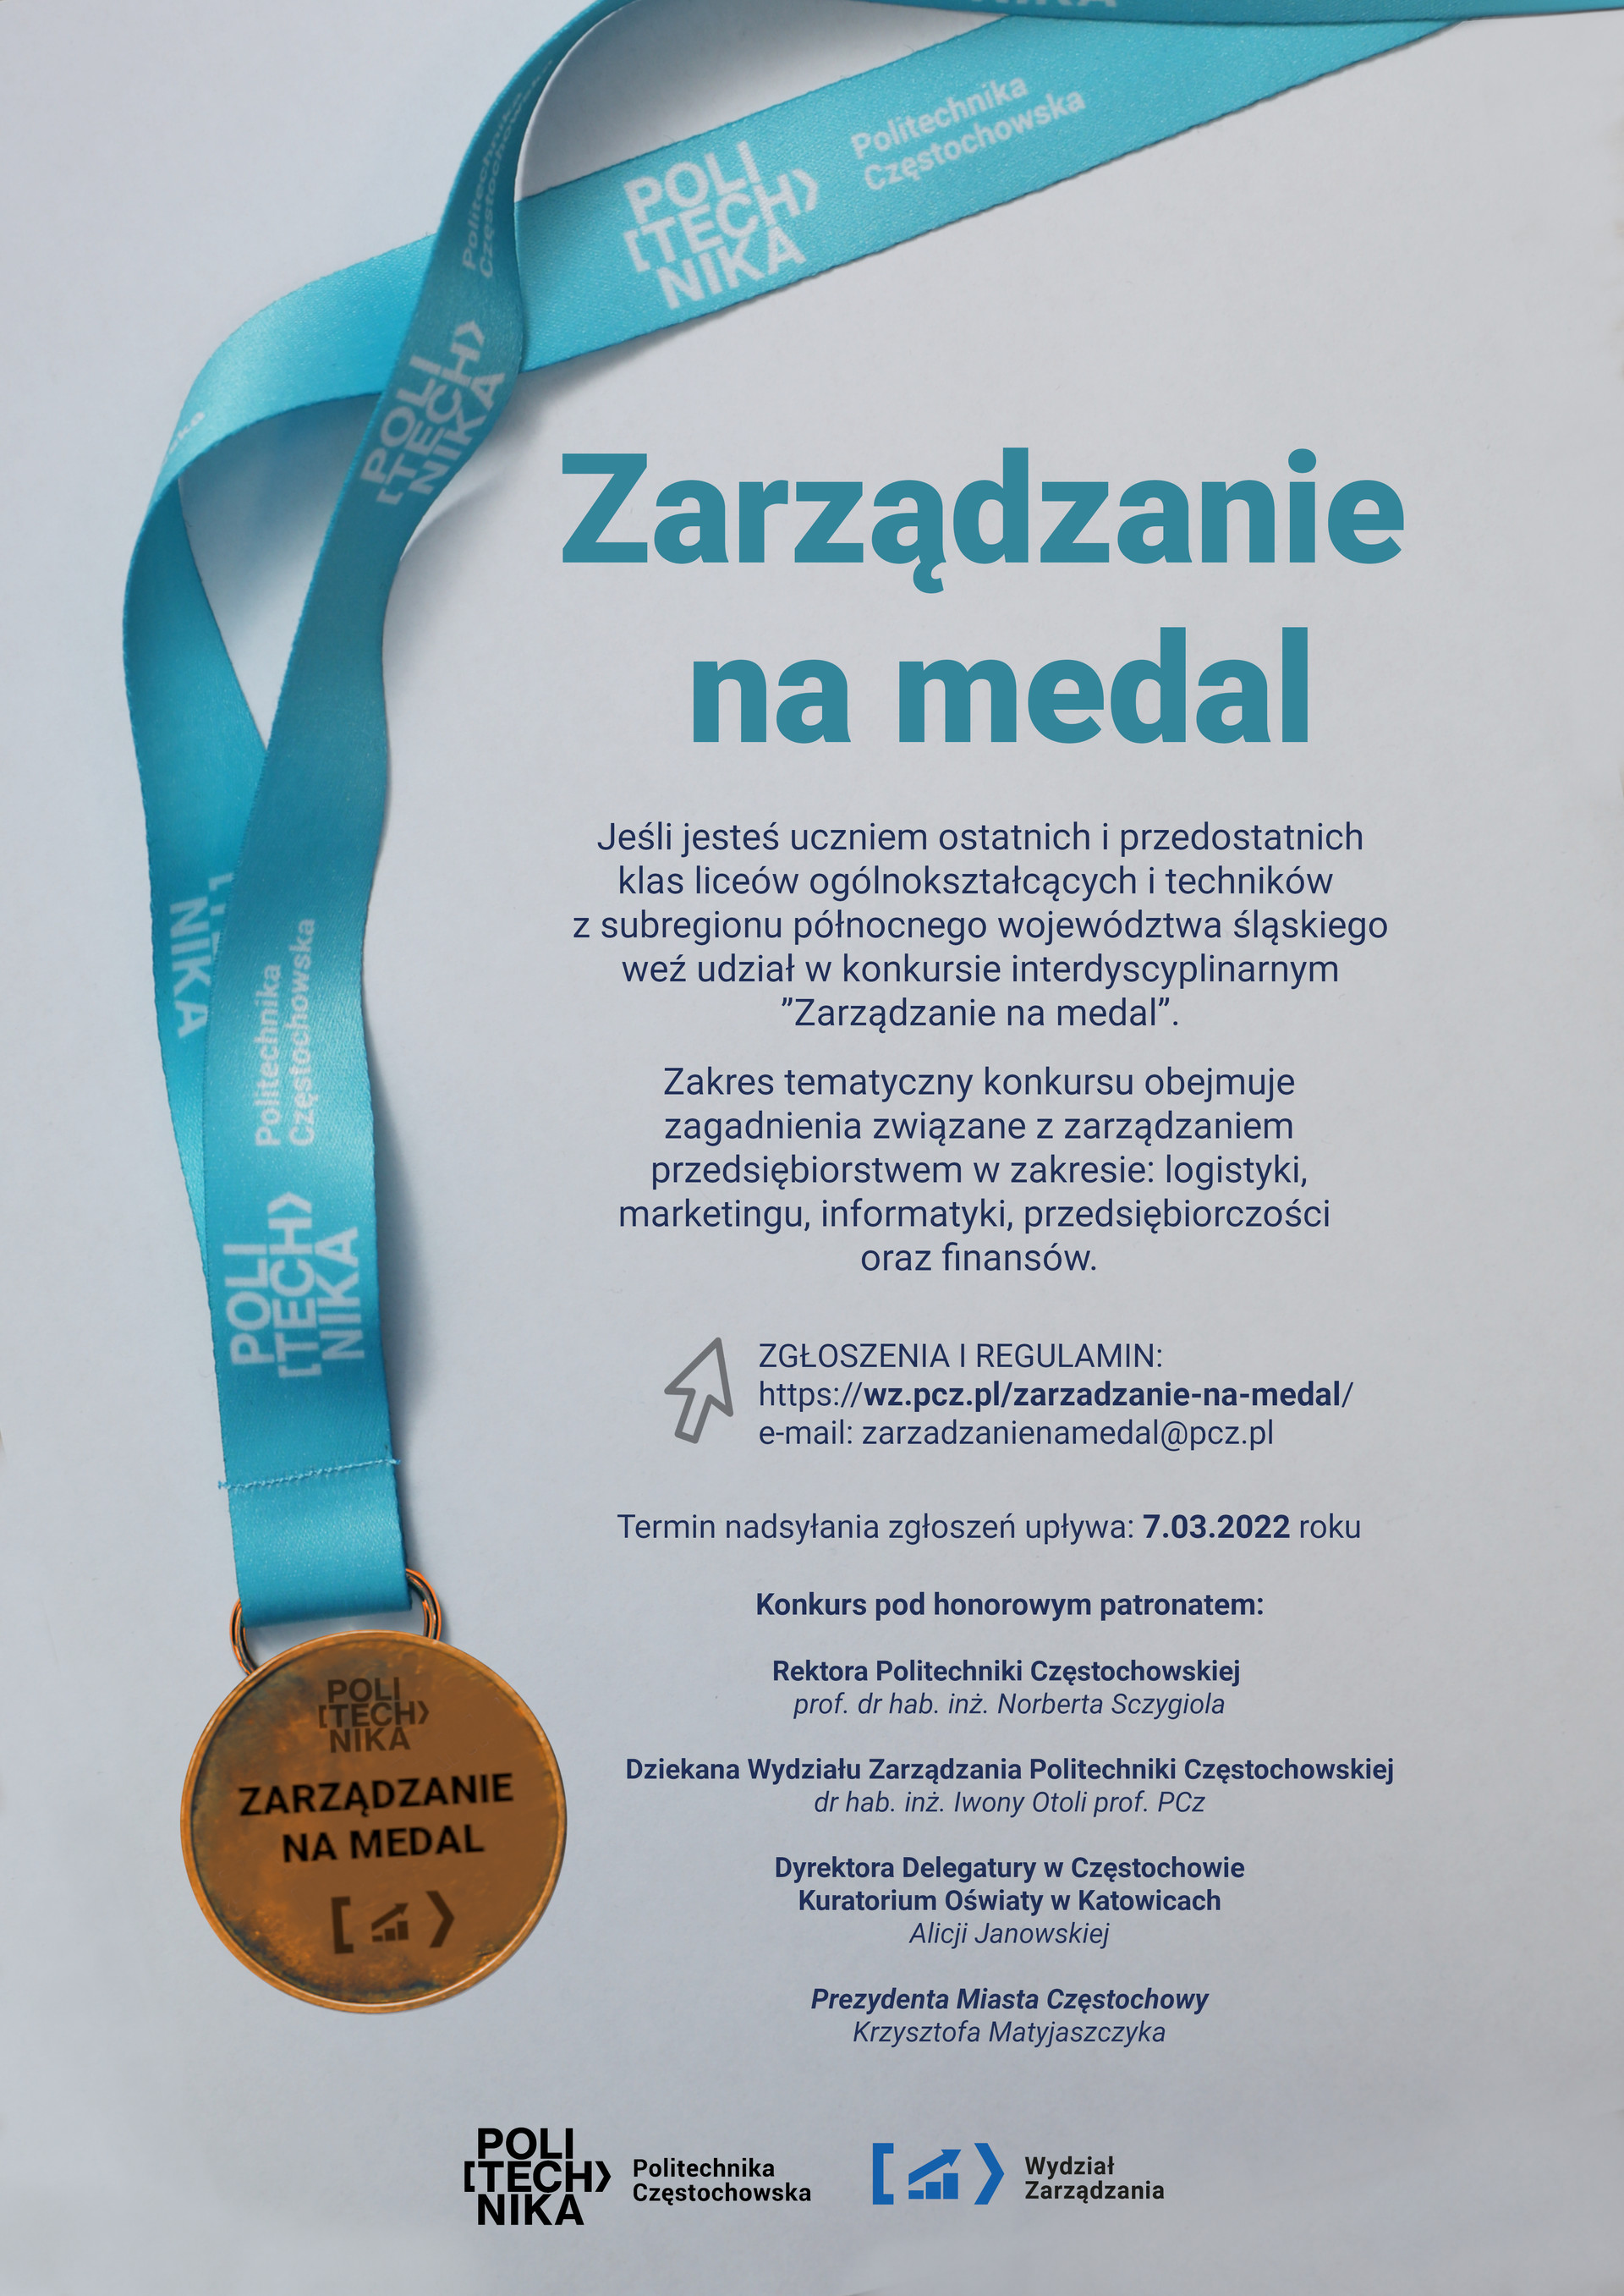 plakat_zarzadzanie_medal_wersja_finalna3_23-02-2022.jpg